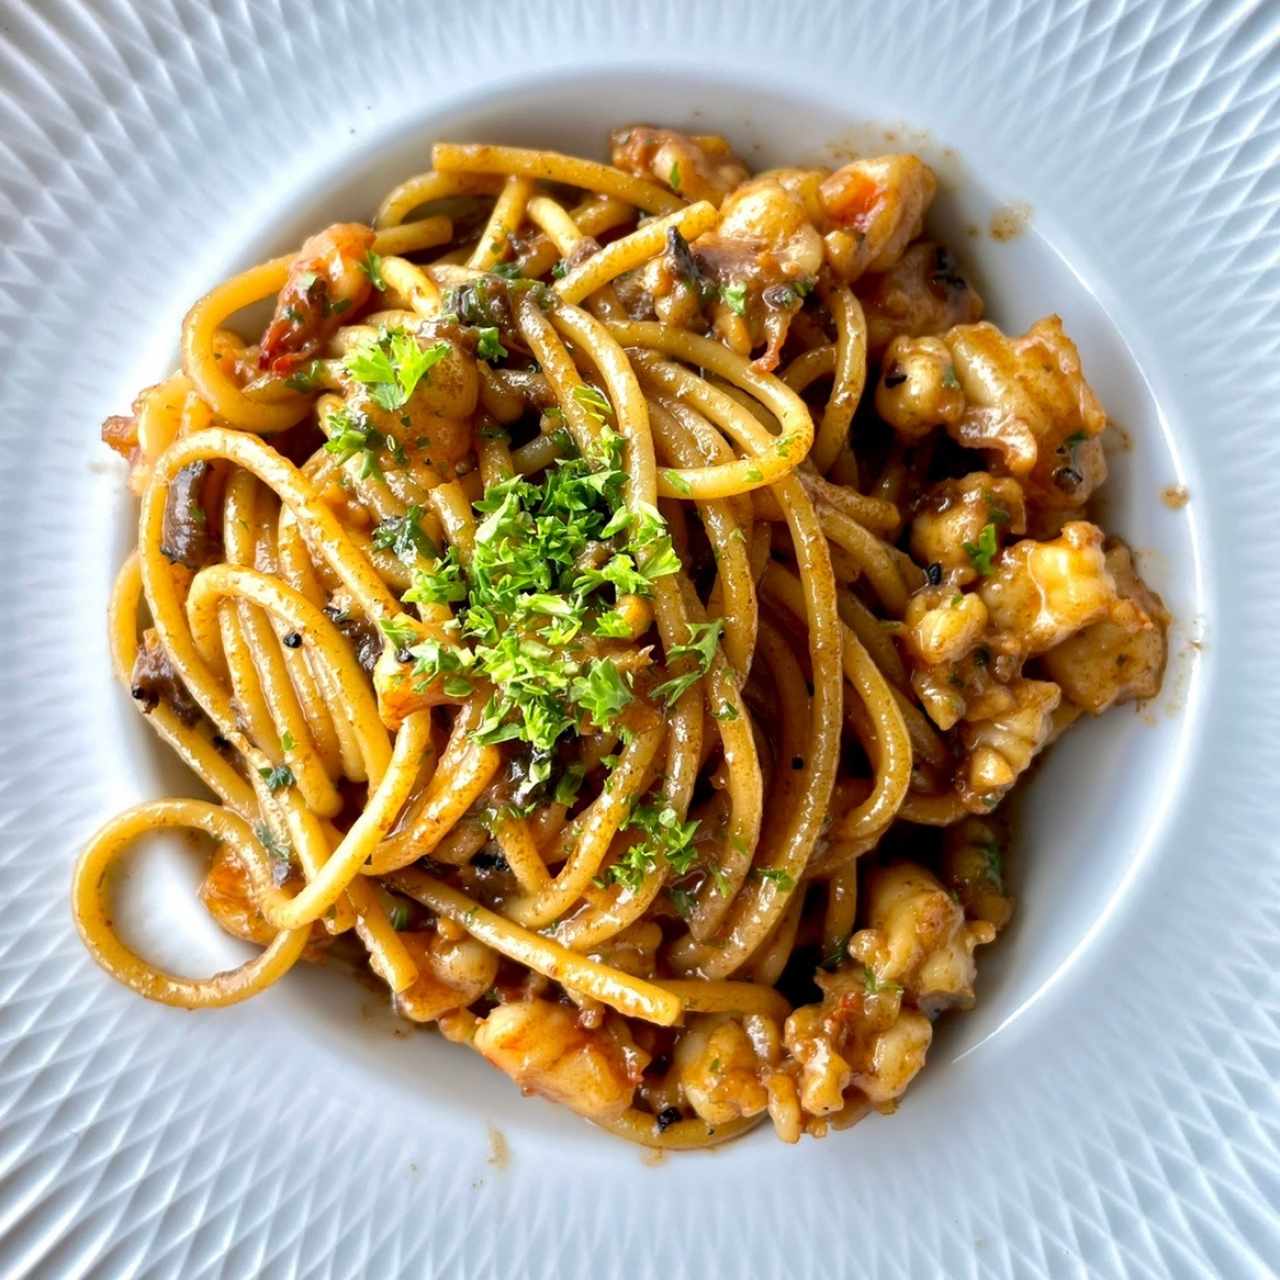 Spaghetti al gambero trufado - 10/10 🍤